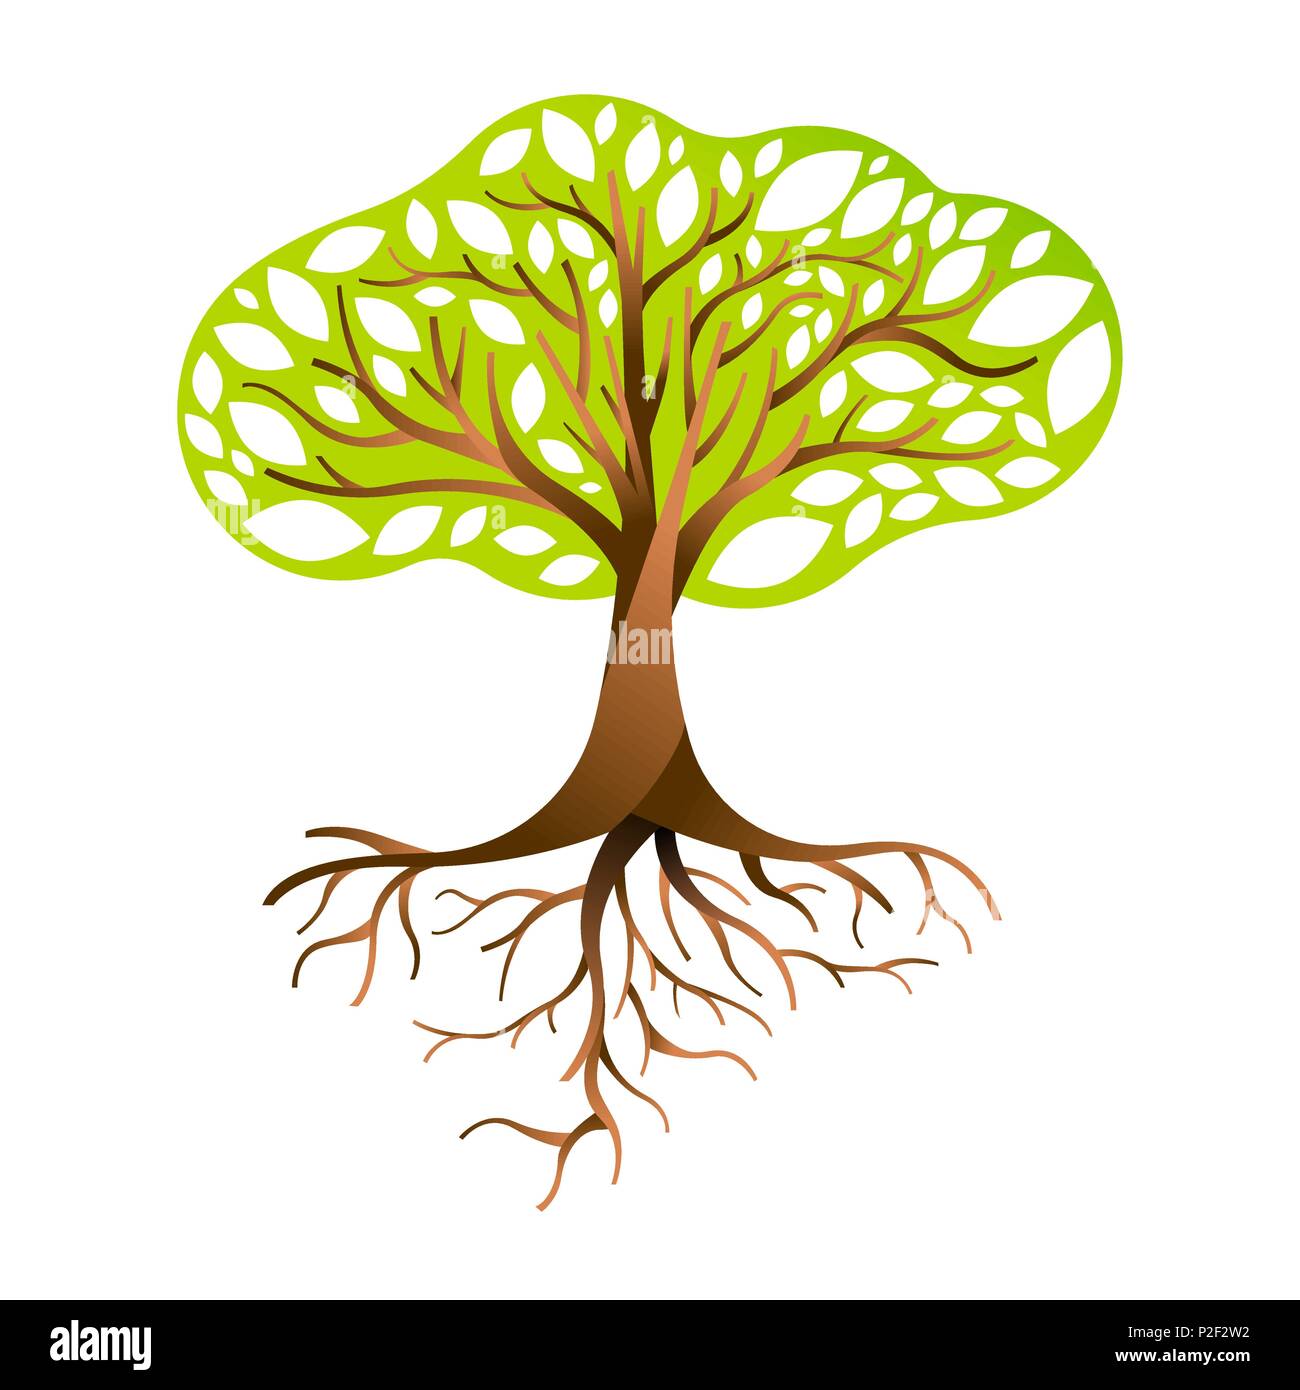 Arborescence constituée de feuilles vertes avec des branches et racines. Concept de la nature, l'environnement de l'aide ou les soins de la terre. Vecteur EPS10. Illustration de Vecteur